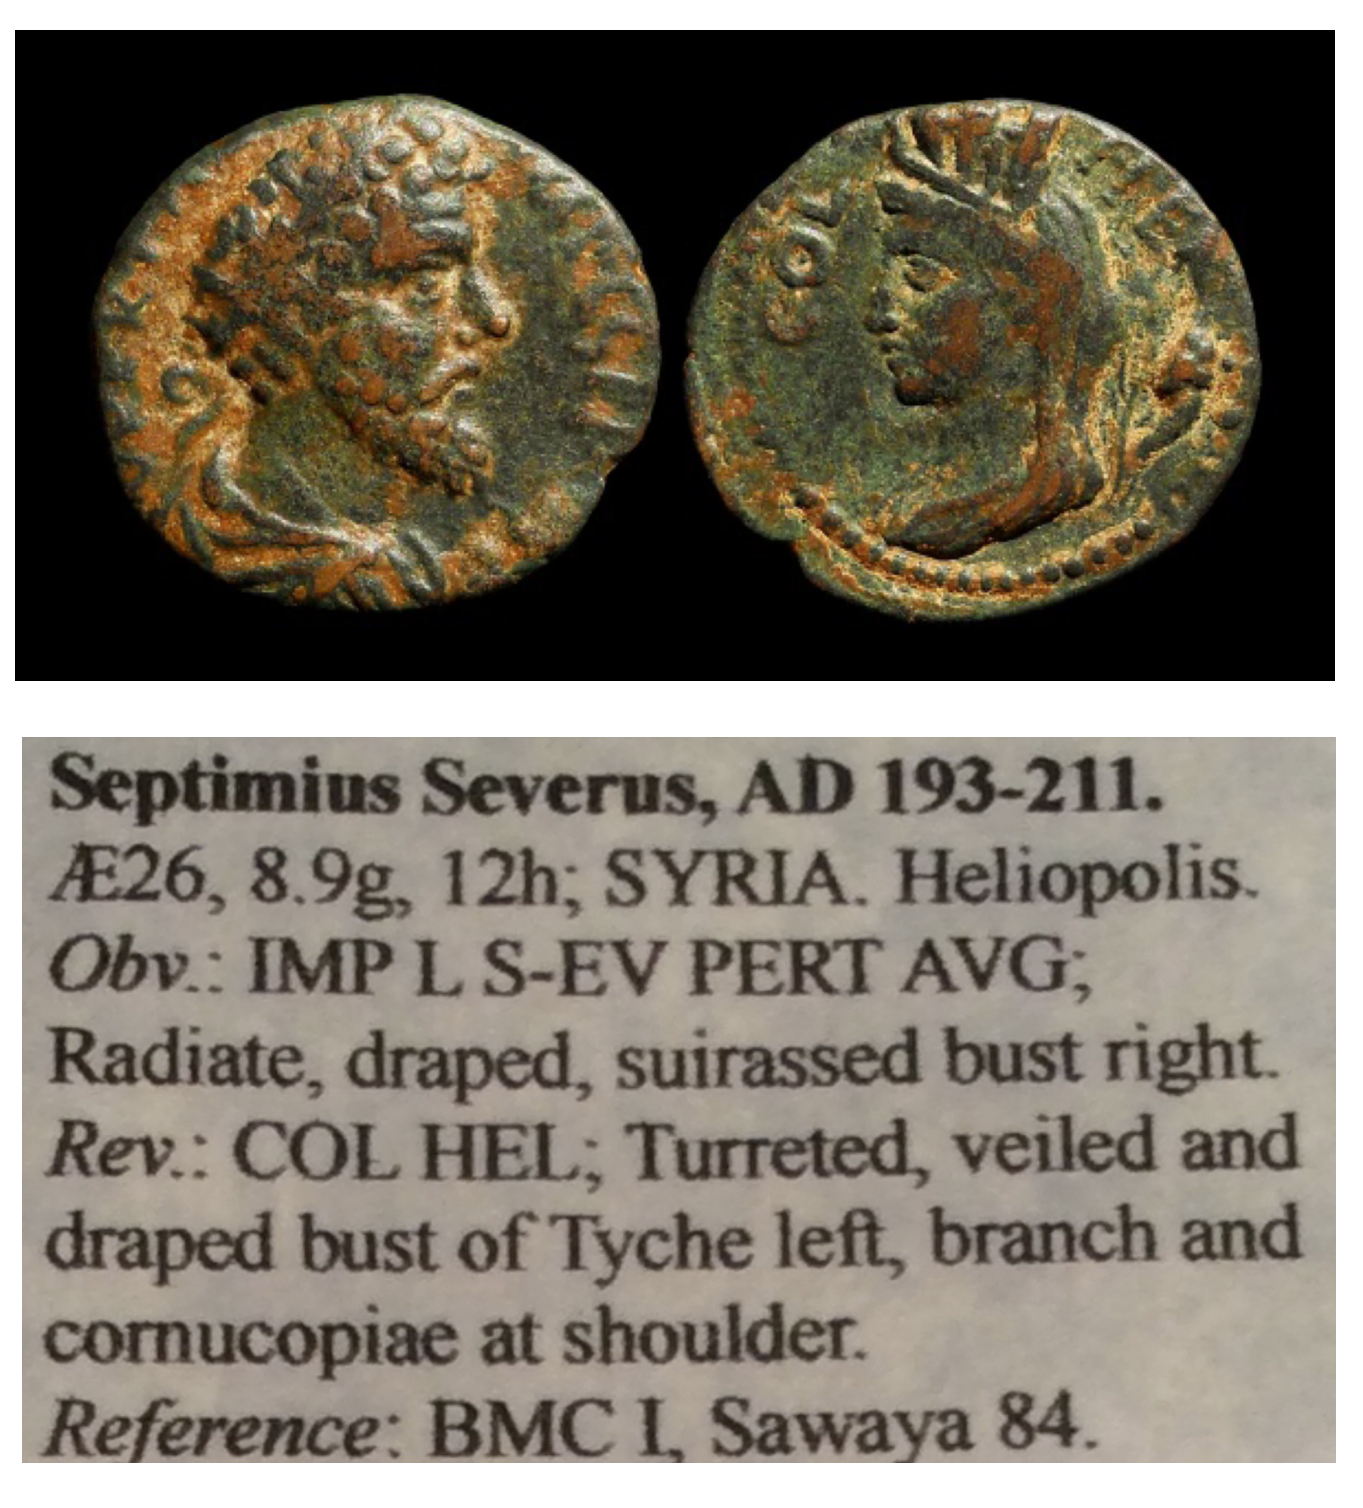 SEPTIMIUS SEVERUS - AD 193-211 SYRIA - HELIOPOLIS.png